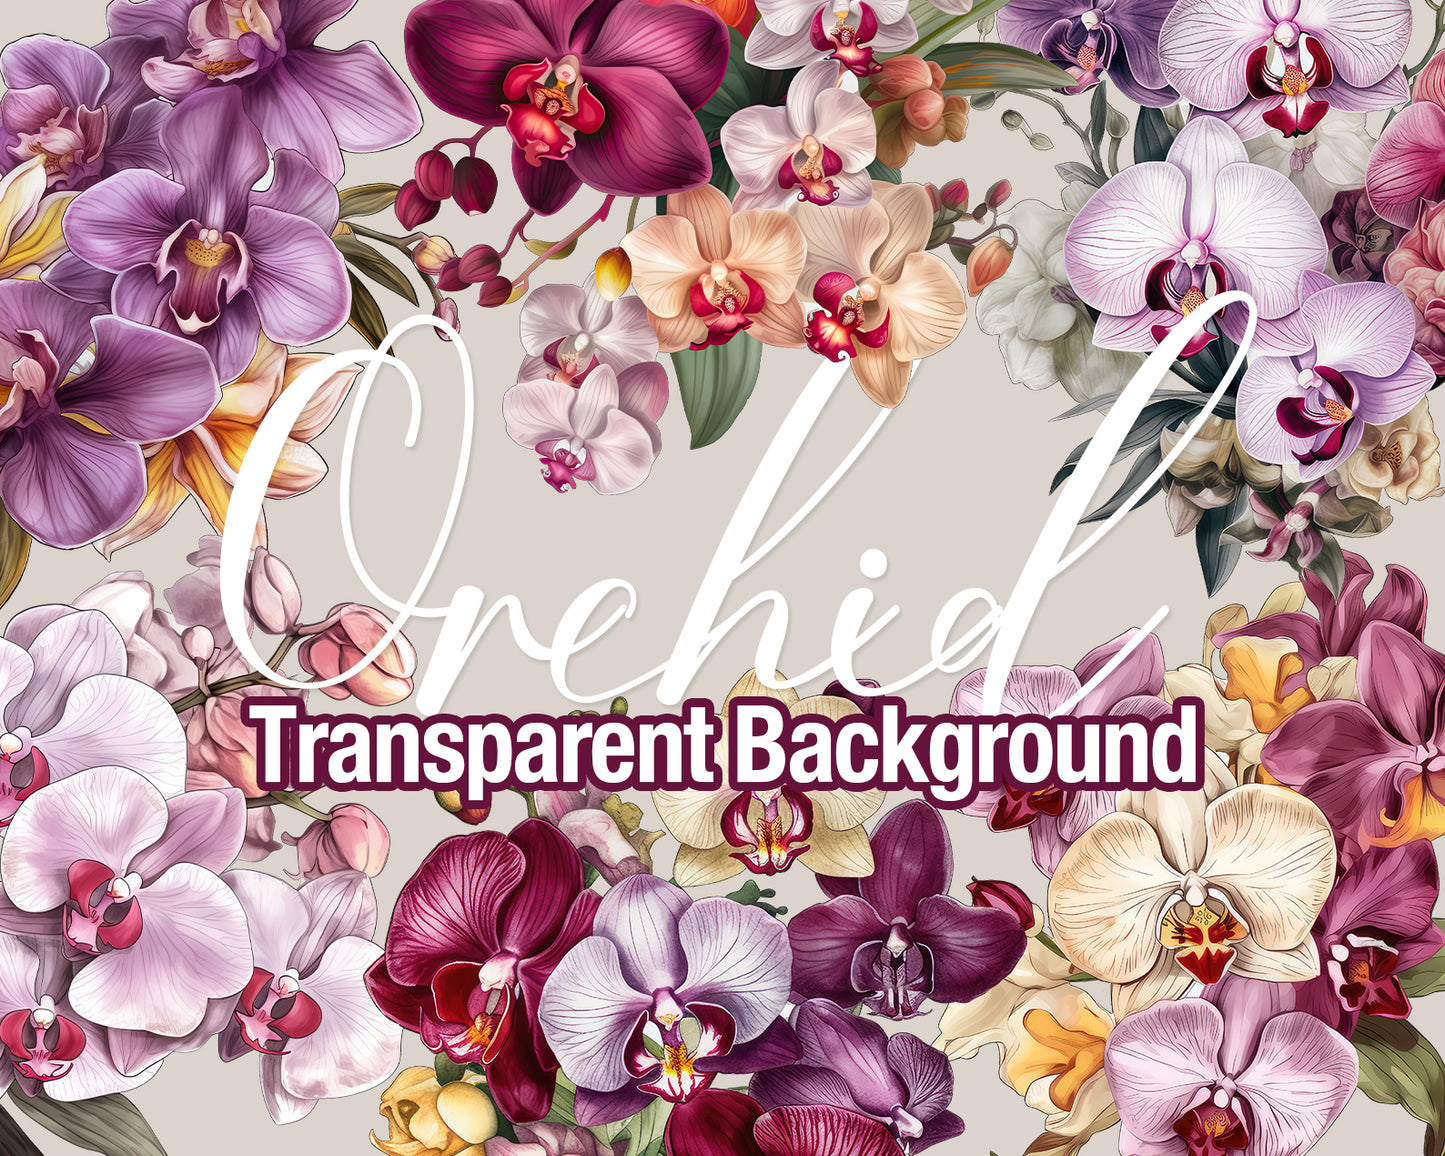 Orchid 6 Bouquets Transparent PNG